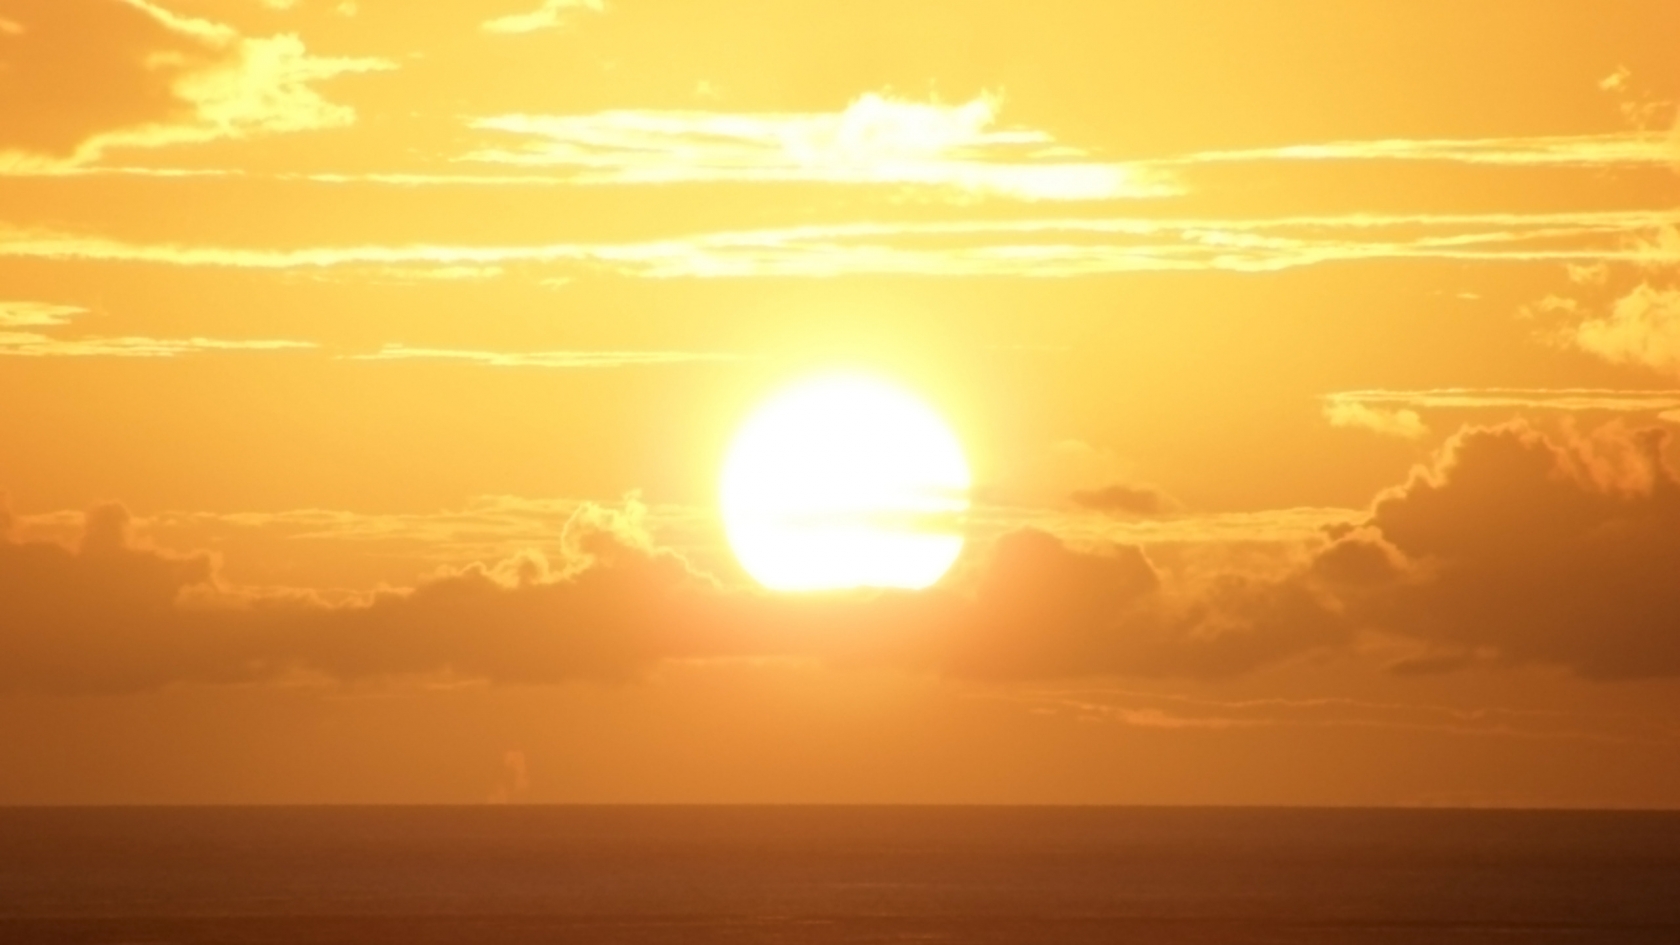 Breathtaking Sunset for 1680 x 945 HDTV resolution